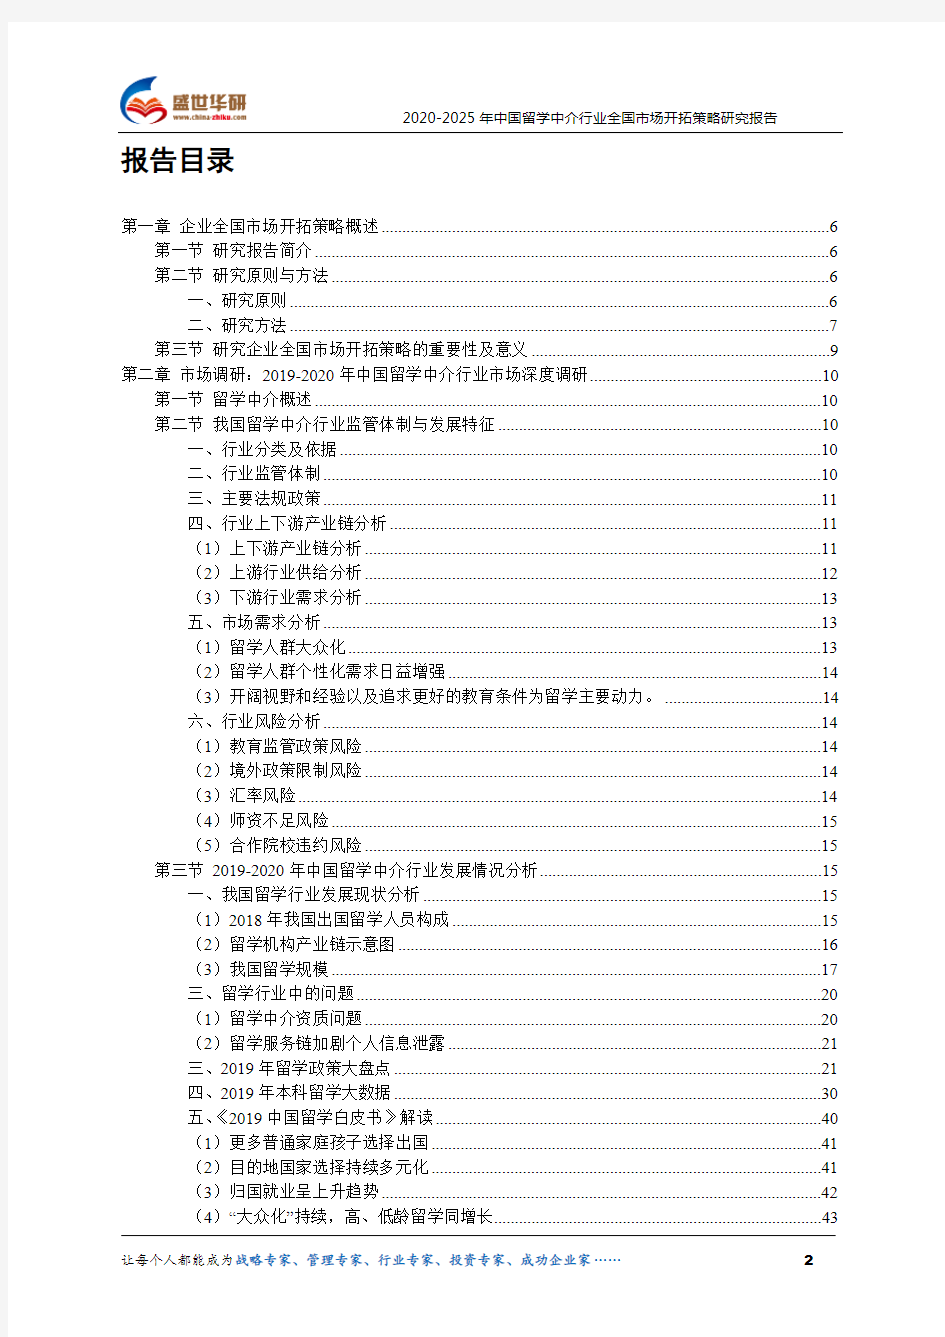 【完整版】2020-2025年中国留学中介行业全国市场开拓策略研究报告